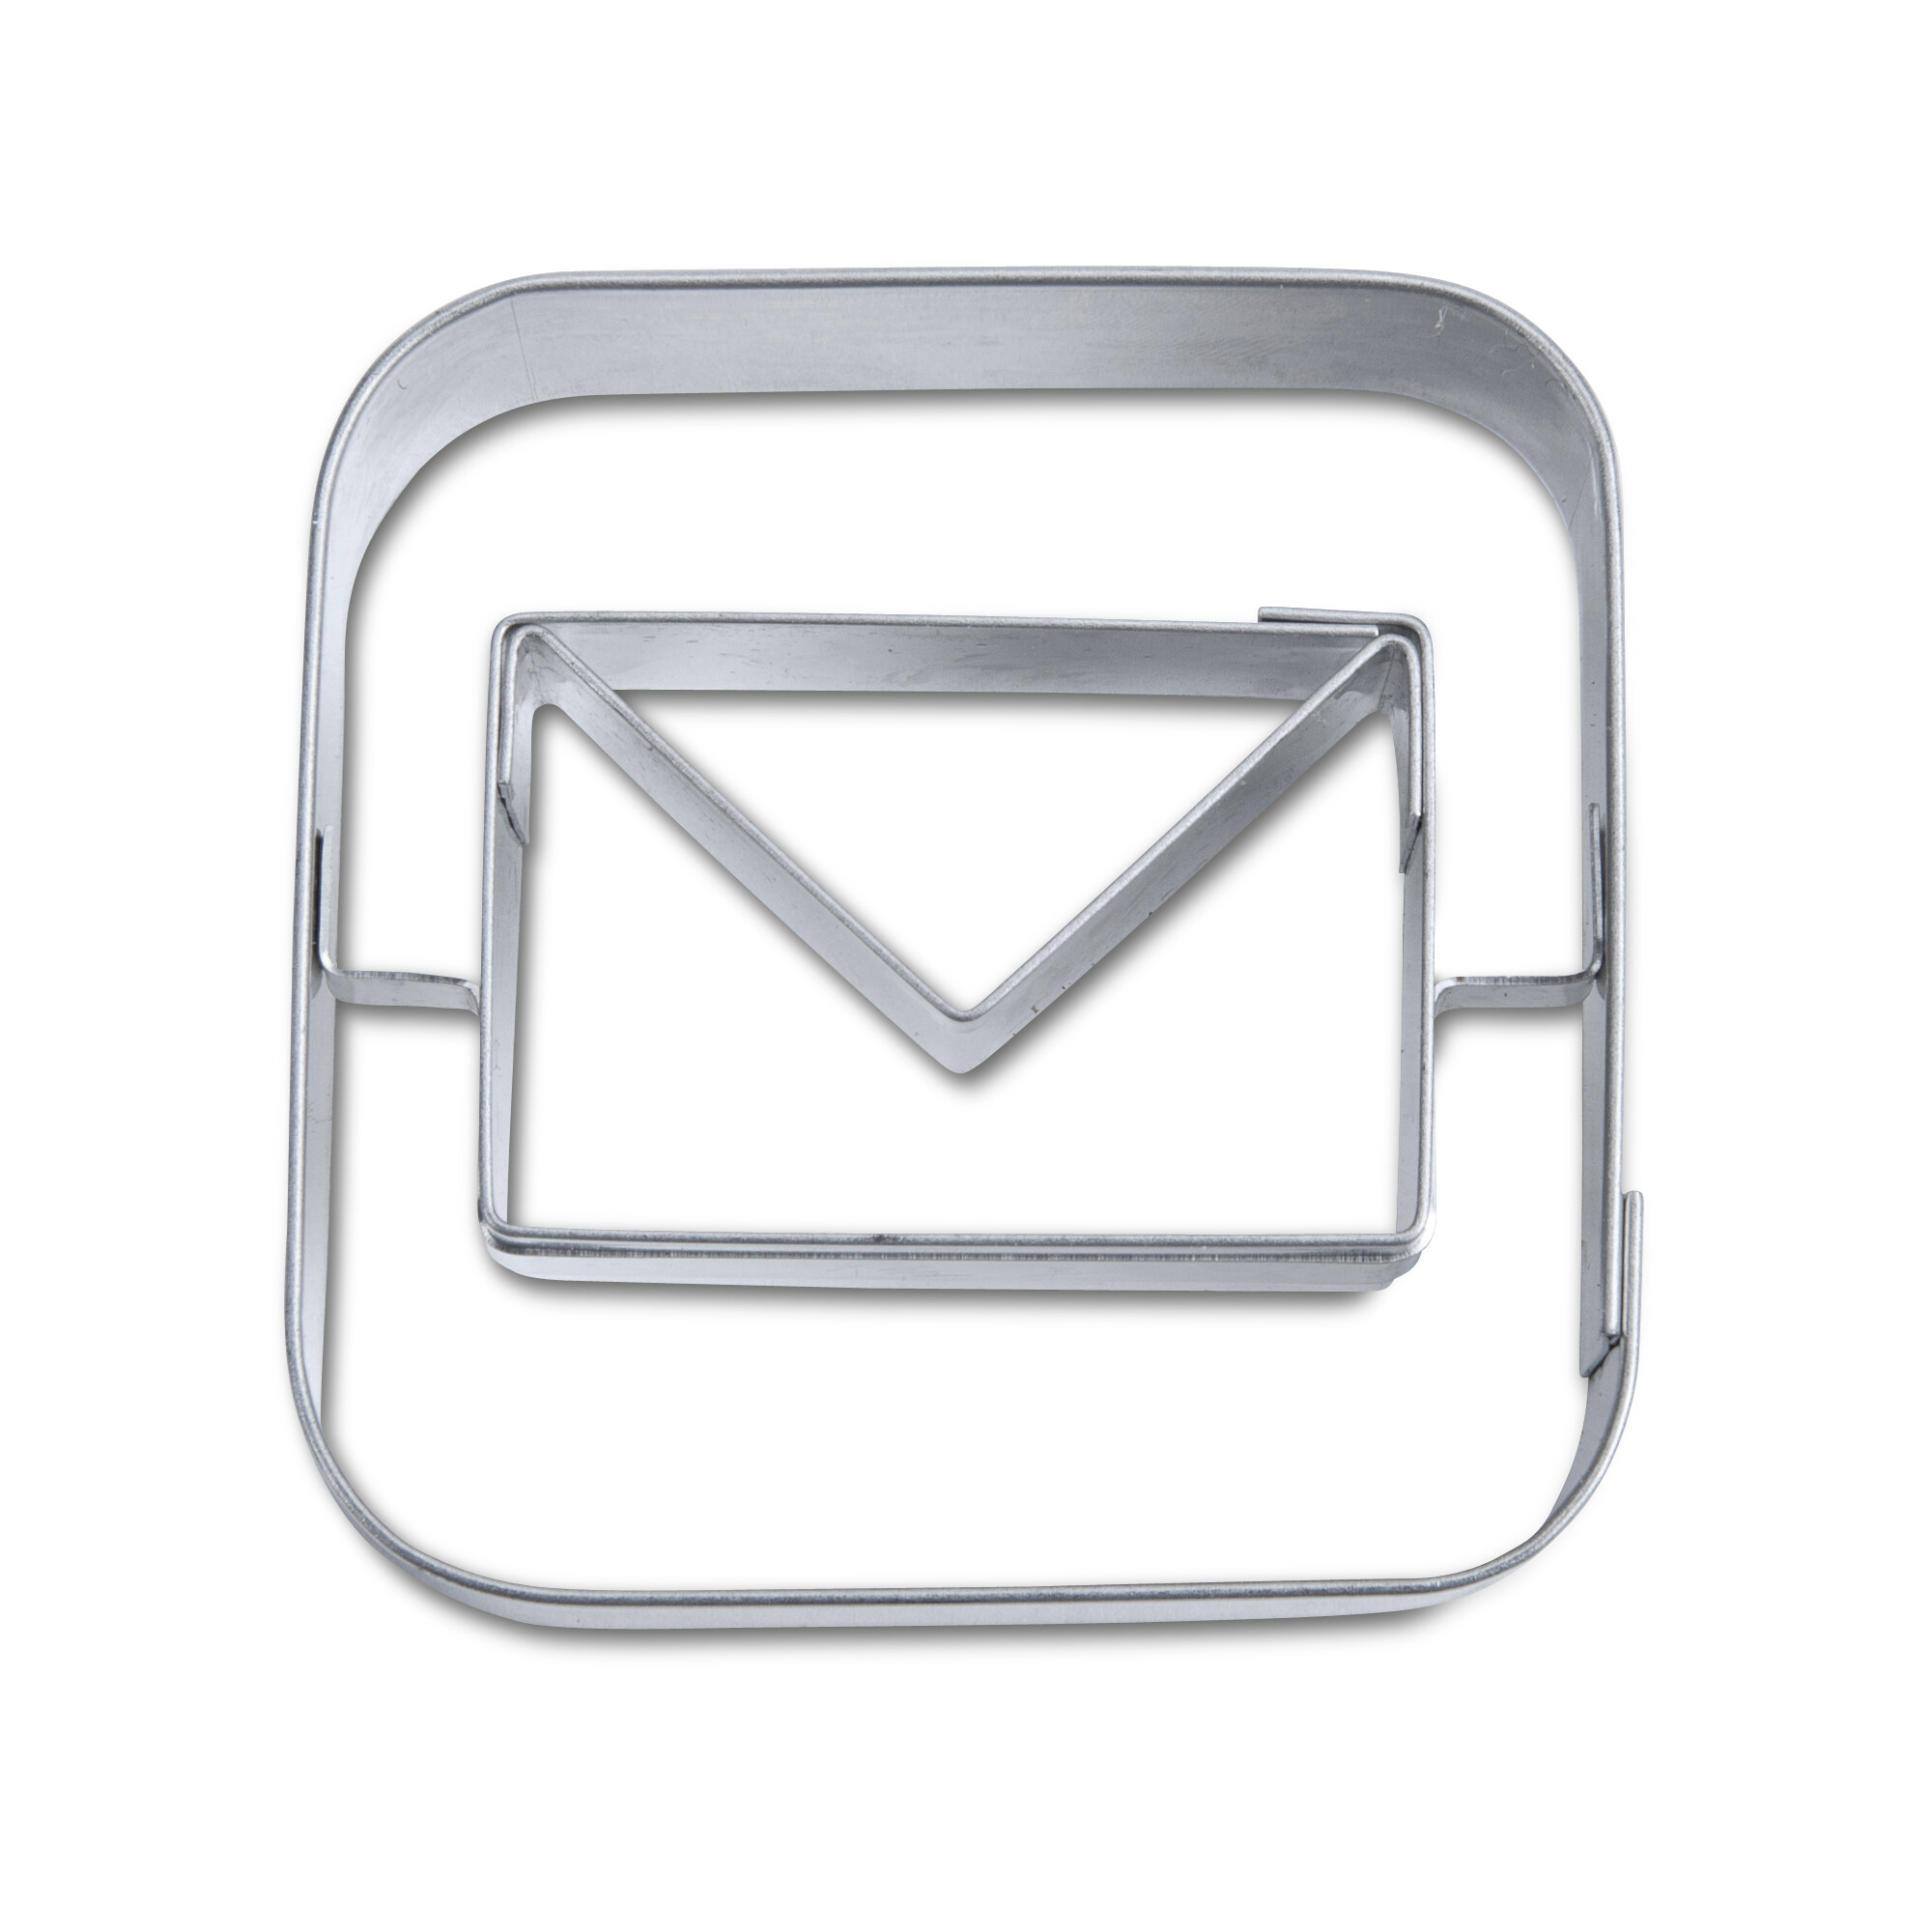 Präge-Ausstecher – App-Cutter Mail